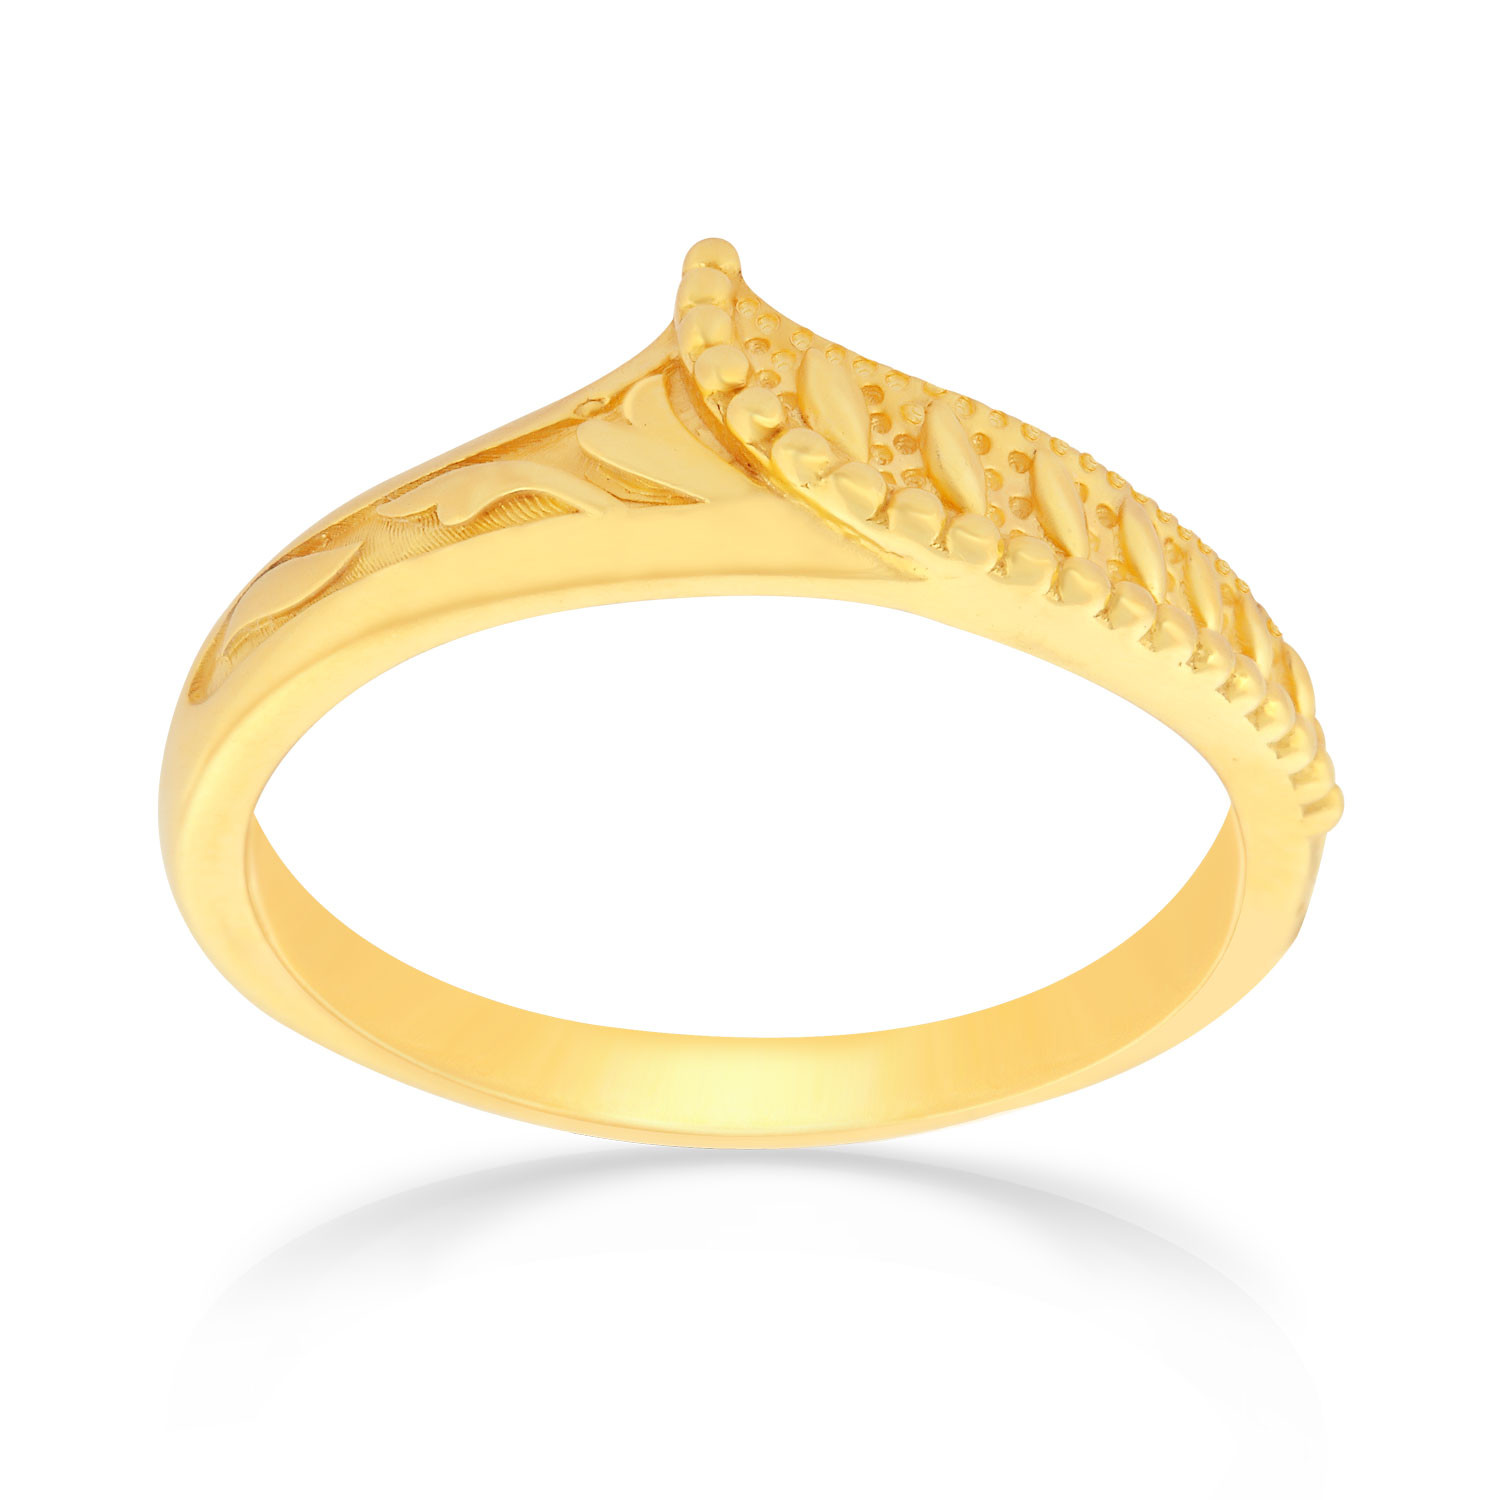 Malabar 22 KT Gold Studded Casual Ring MHAAAAAABHGH